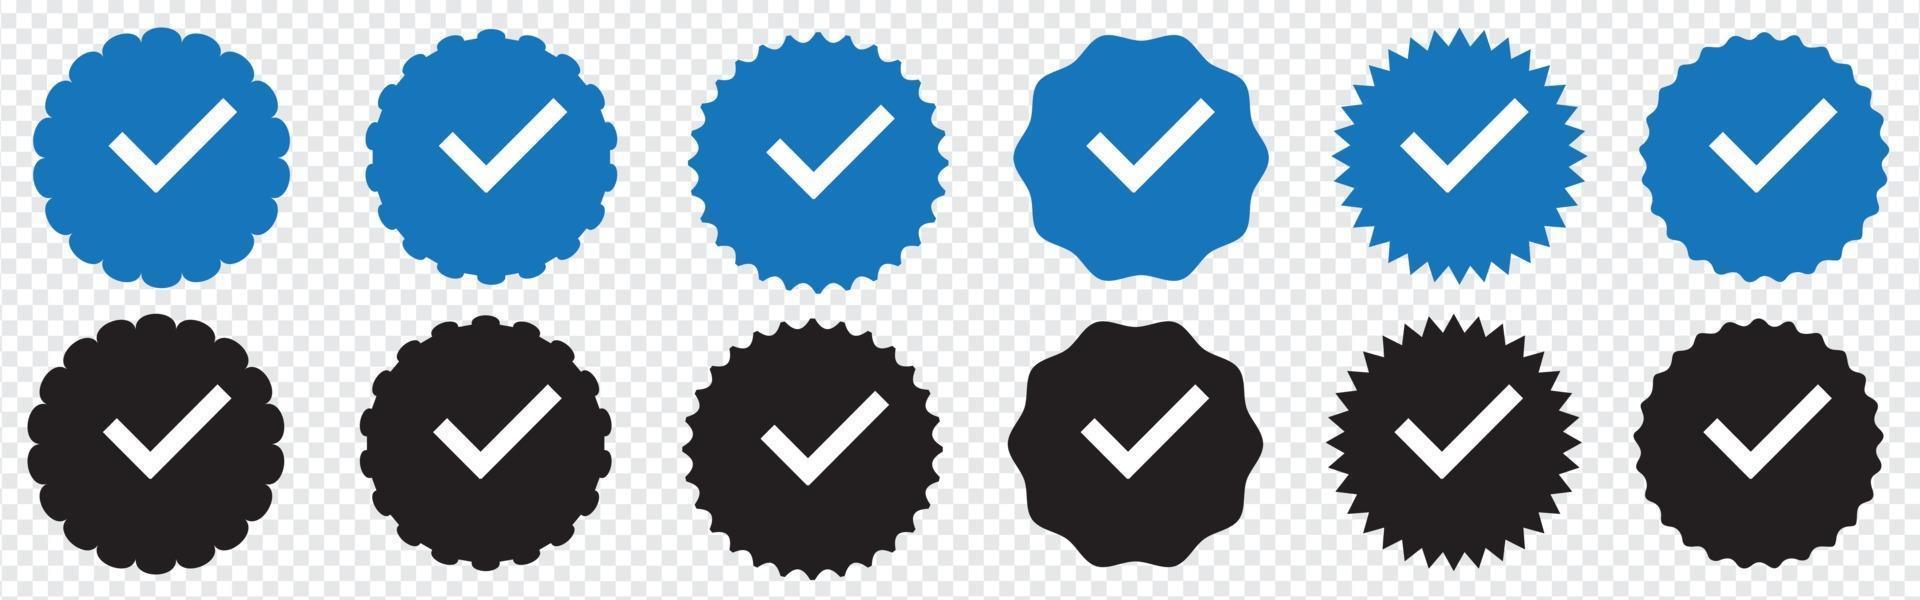 set di profili badge verificato. distintivo verificato da instagram. social media vettore